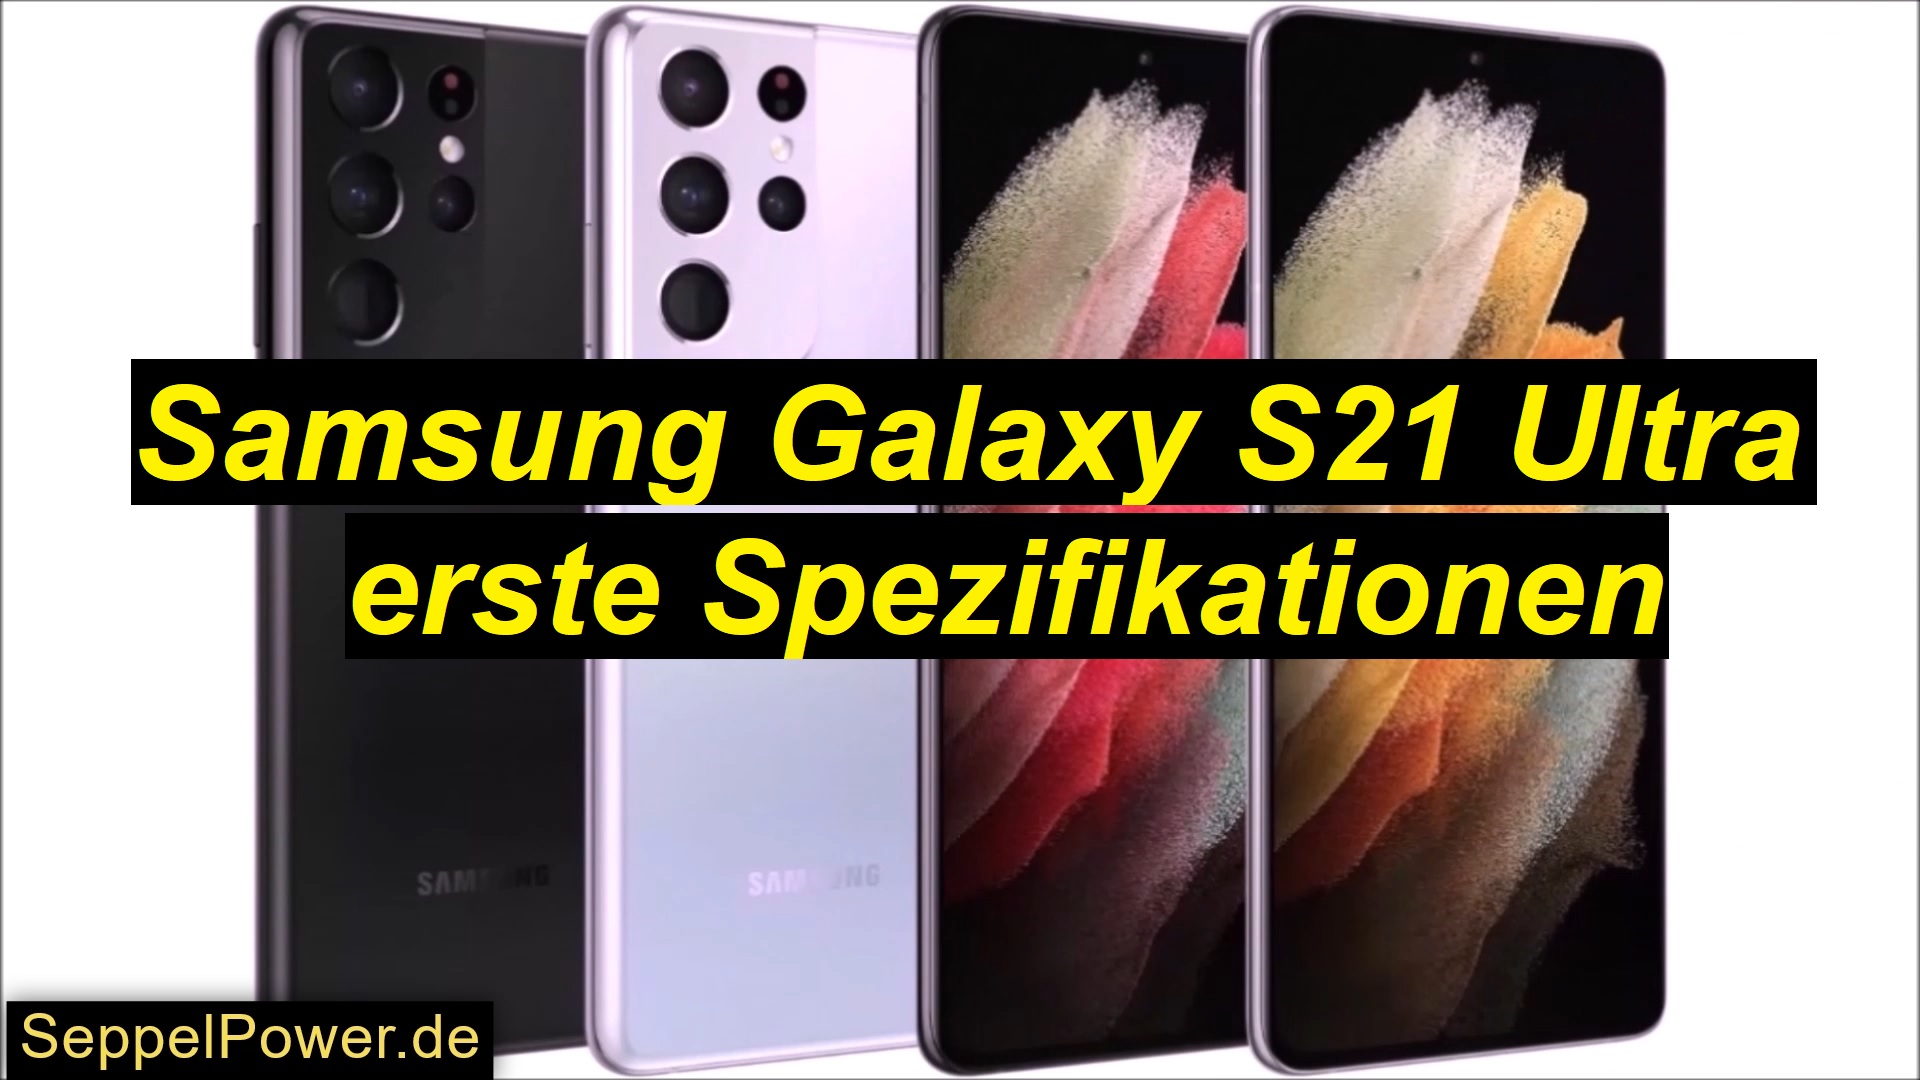 Samsung Galaxy S21 Ultra erste Spezifikationen - SeppelPower